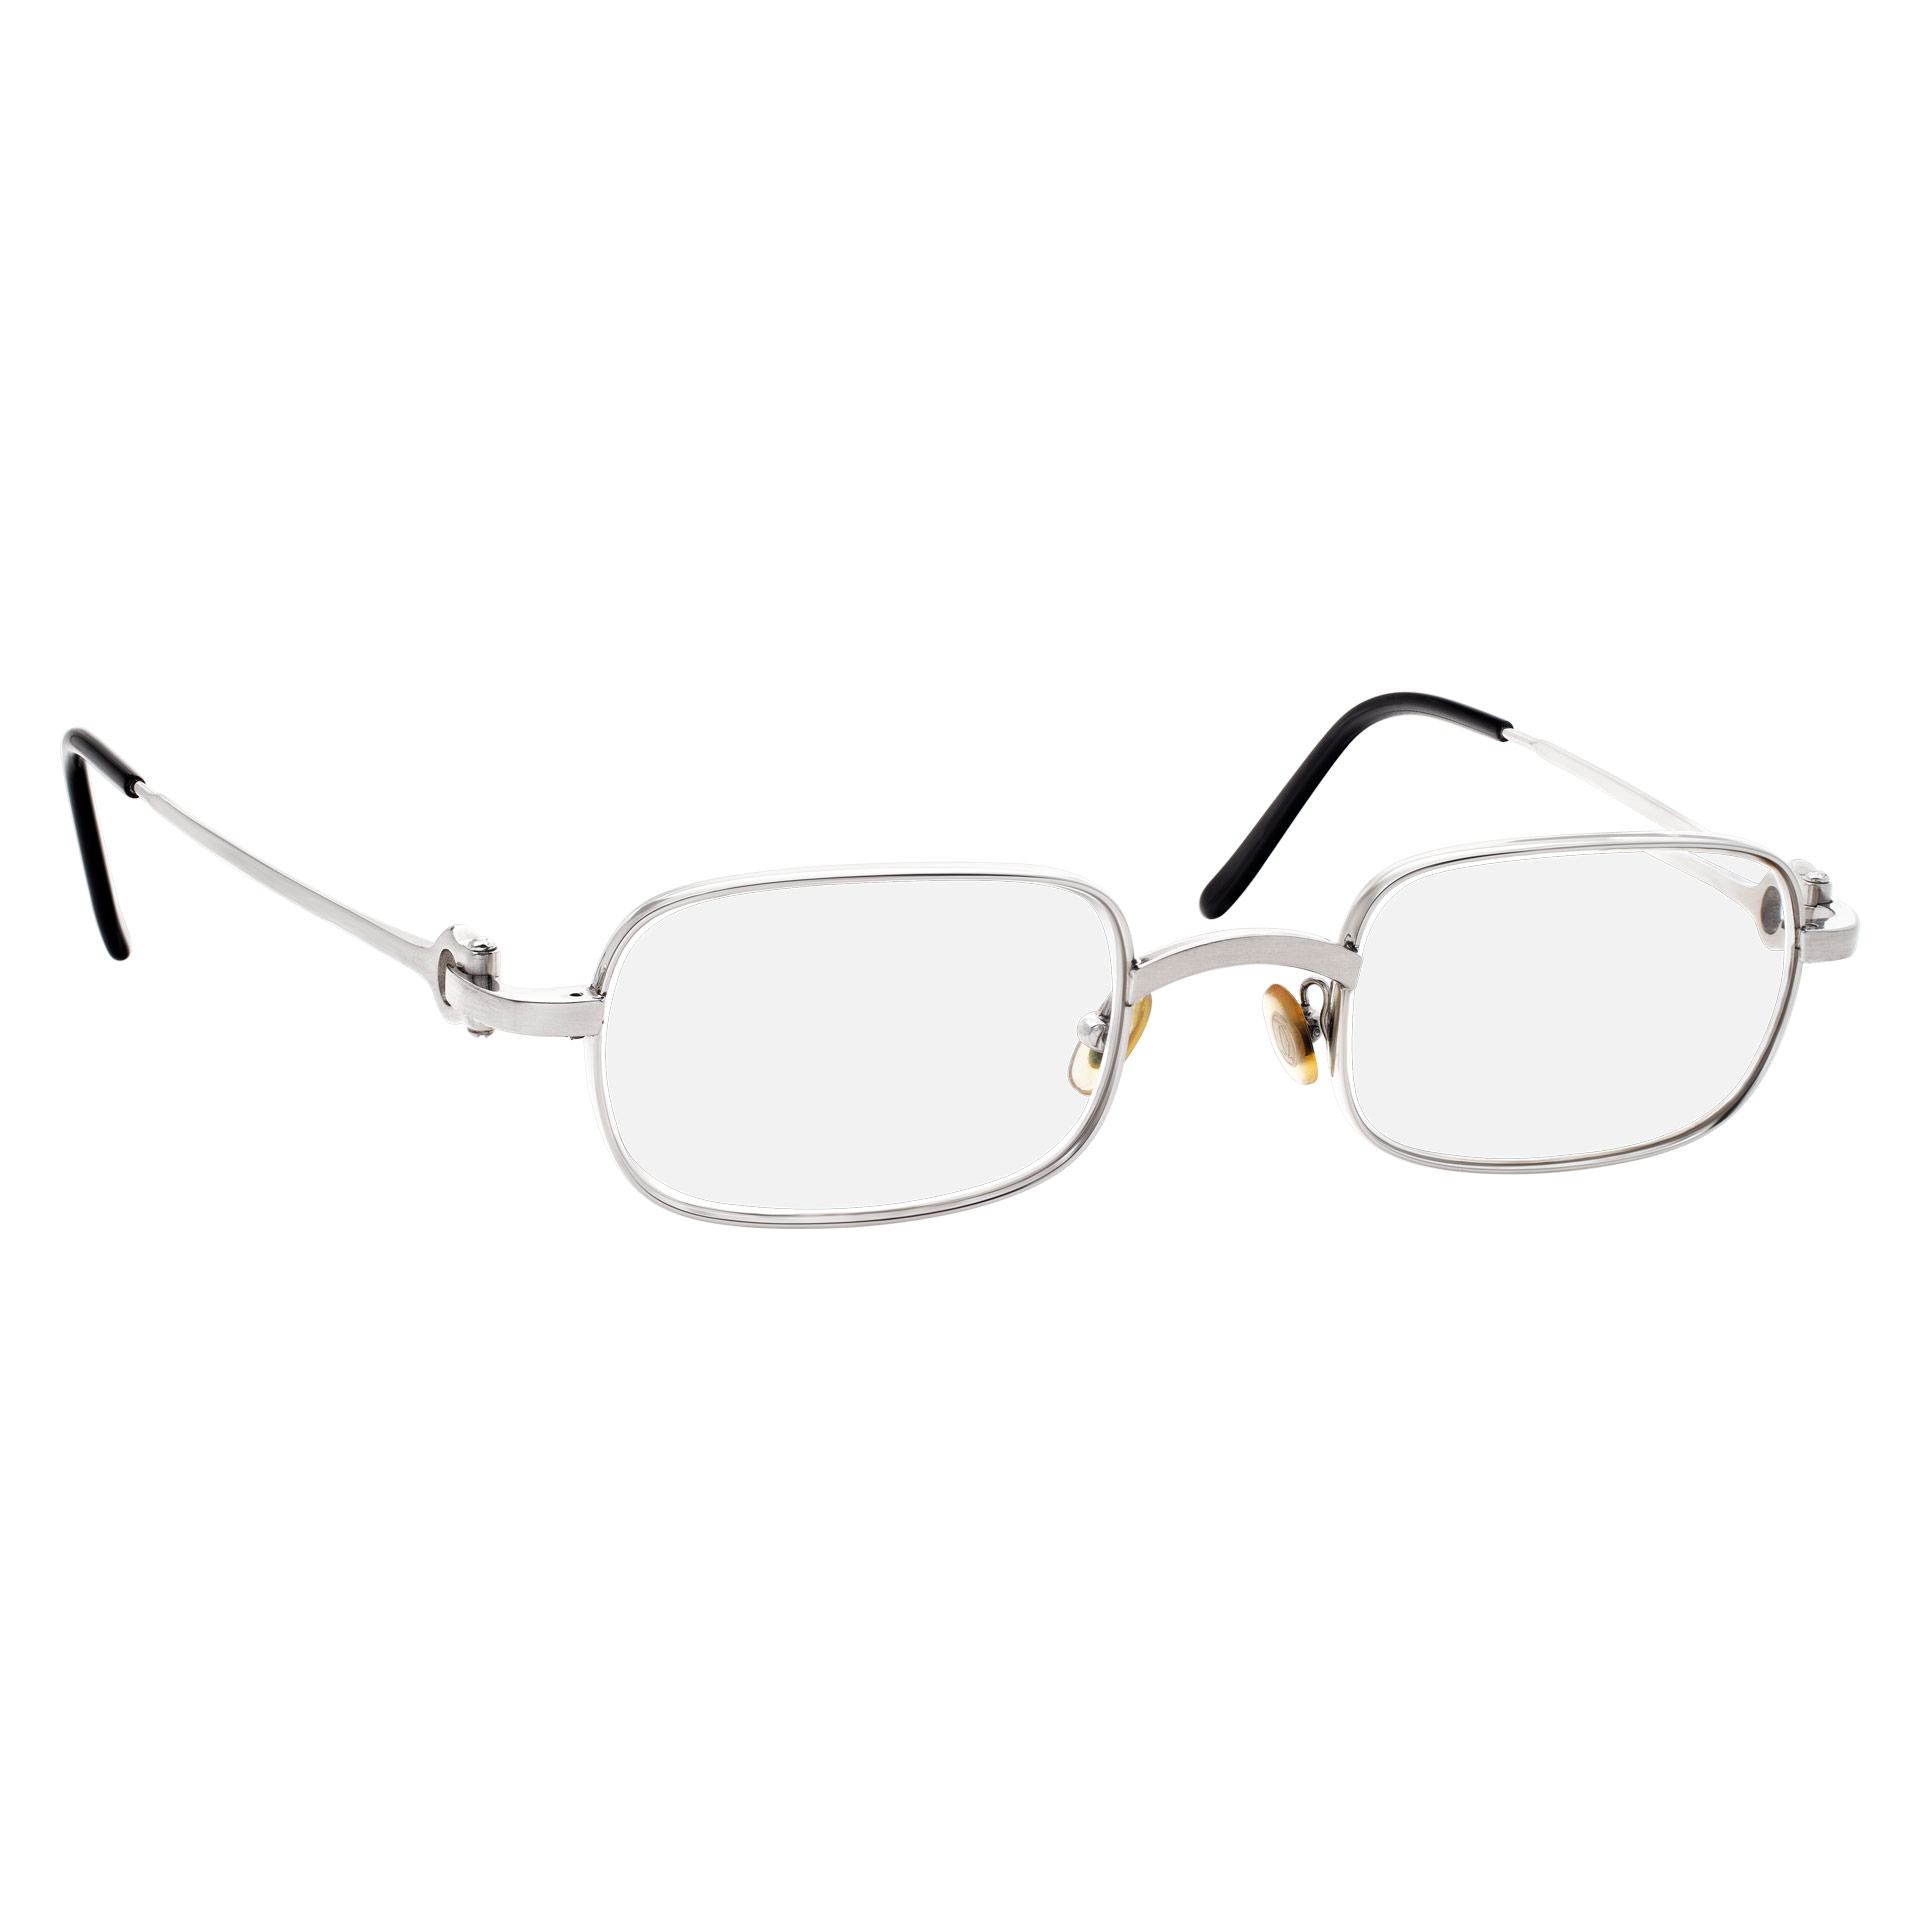 Cartier Bolon model frame glasses in stainless steel image 1